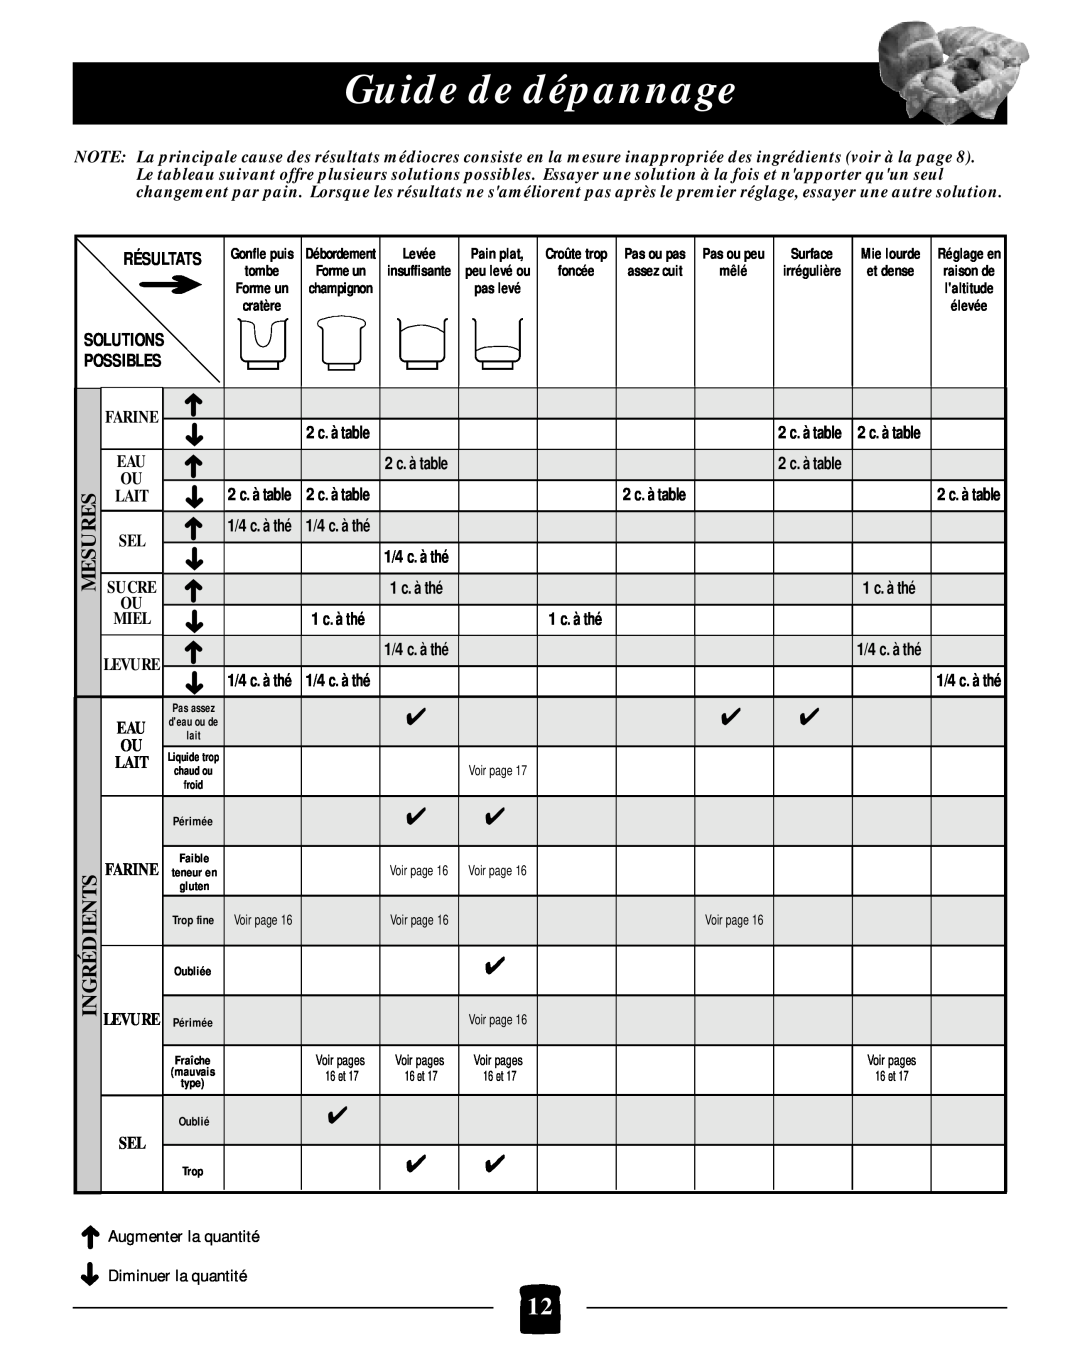 Black & Decker B2005 Guide de dépannage, Résultats, Levée, Augmenter la quantité Diminuer la quantité, Surface, 1 c. à thé 